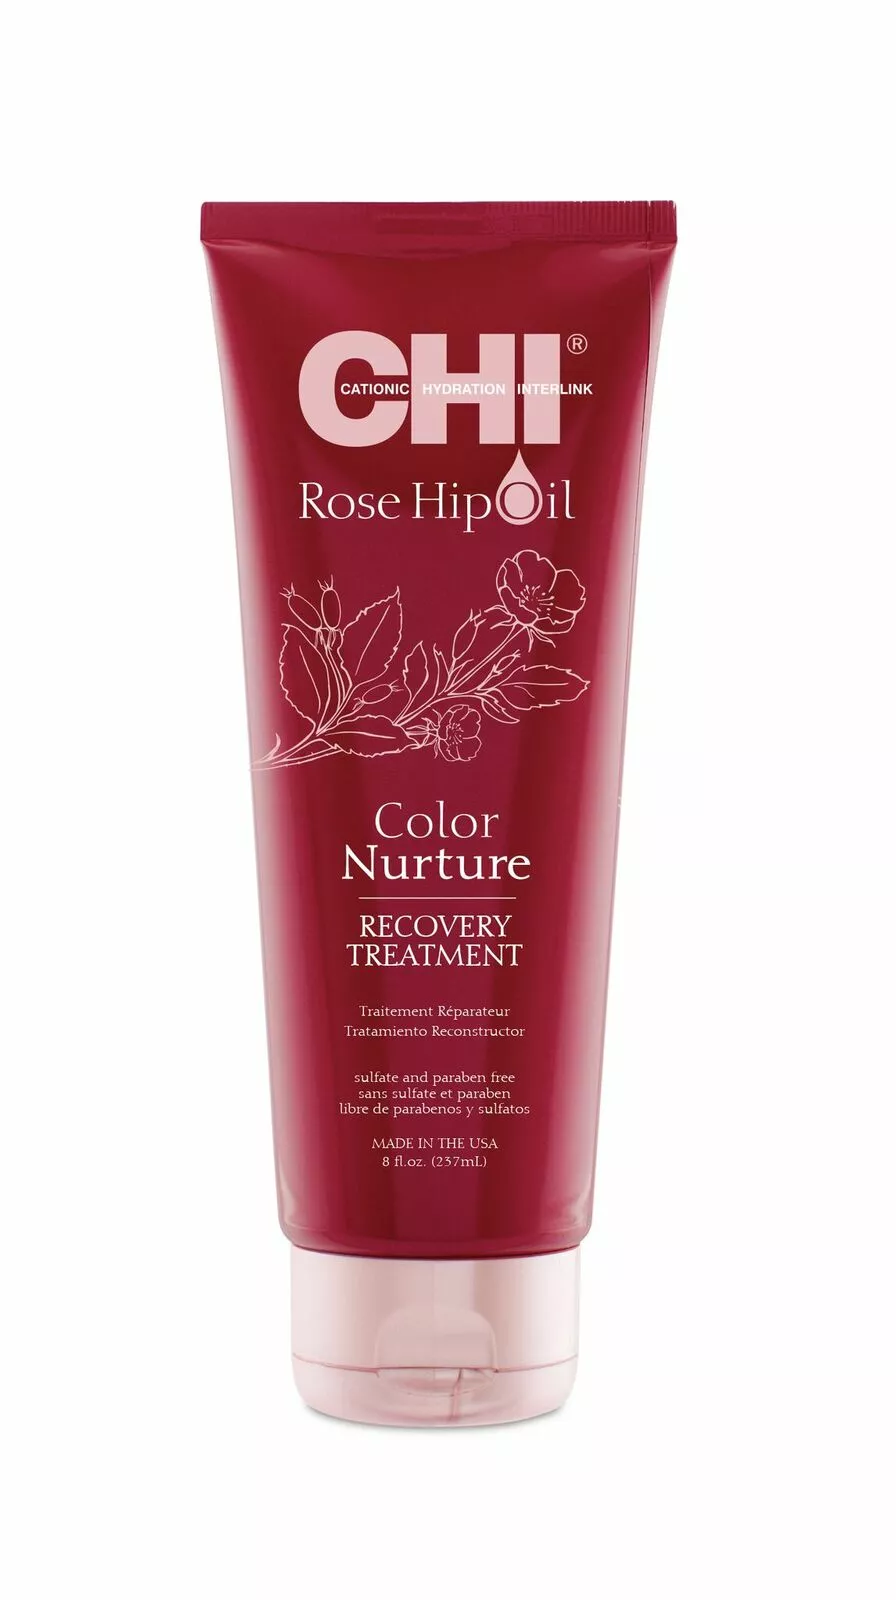 CHI ROSE HIP atkuriamoji kaukė dažytiems plaukams su erškėtuogių aliejumi